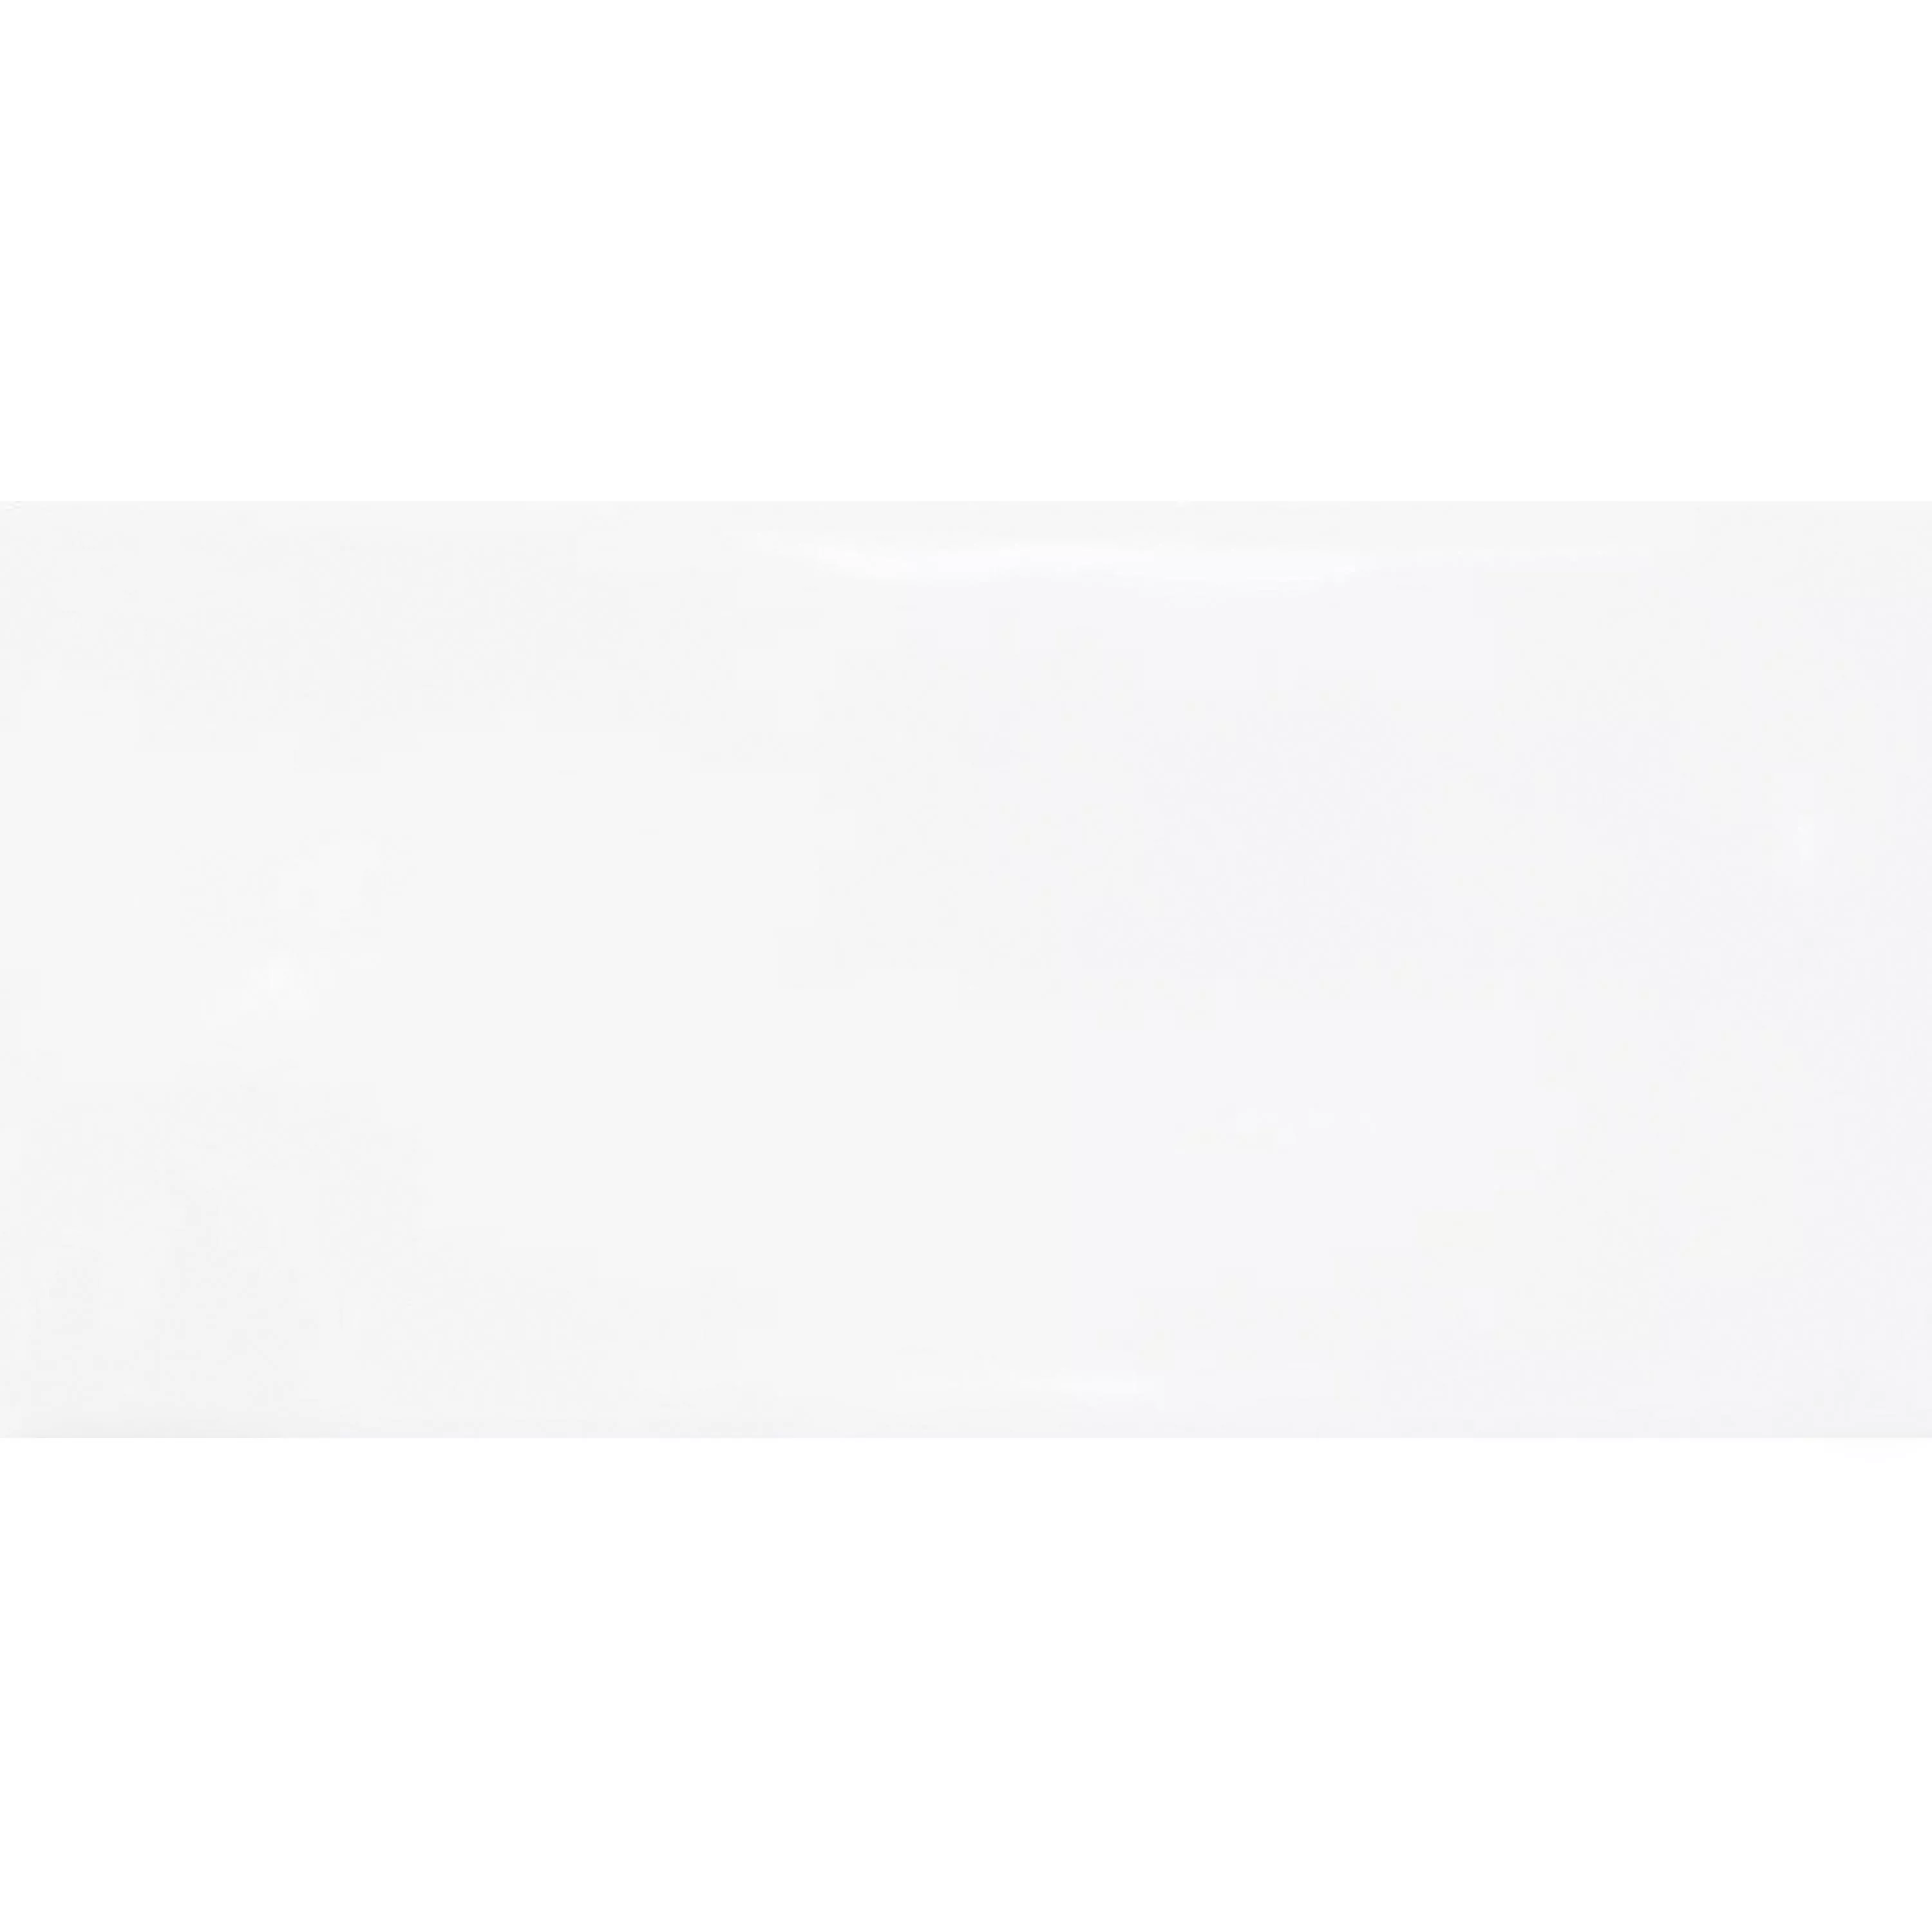 Sample Wandfliesen Mogadischu 7,5x15cm Weiß Glänzend